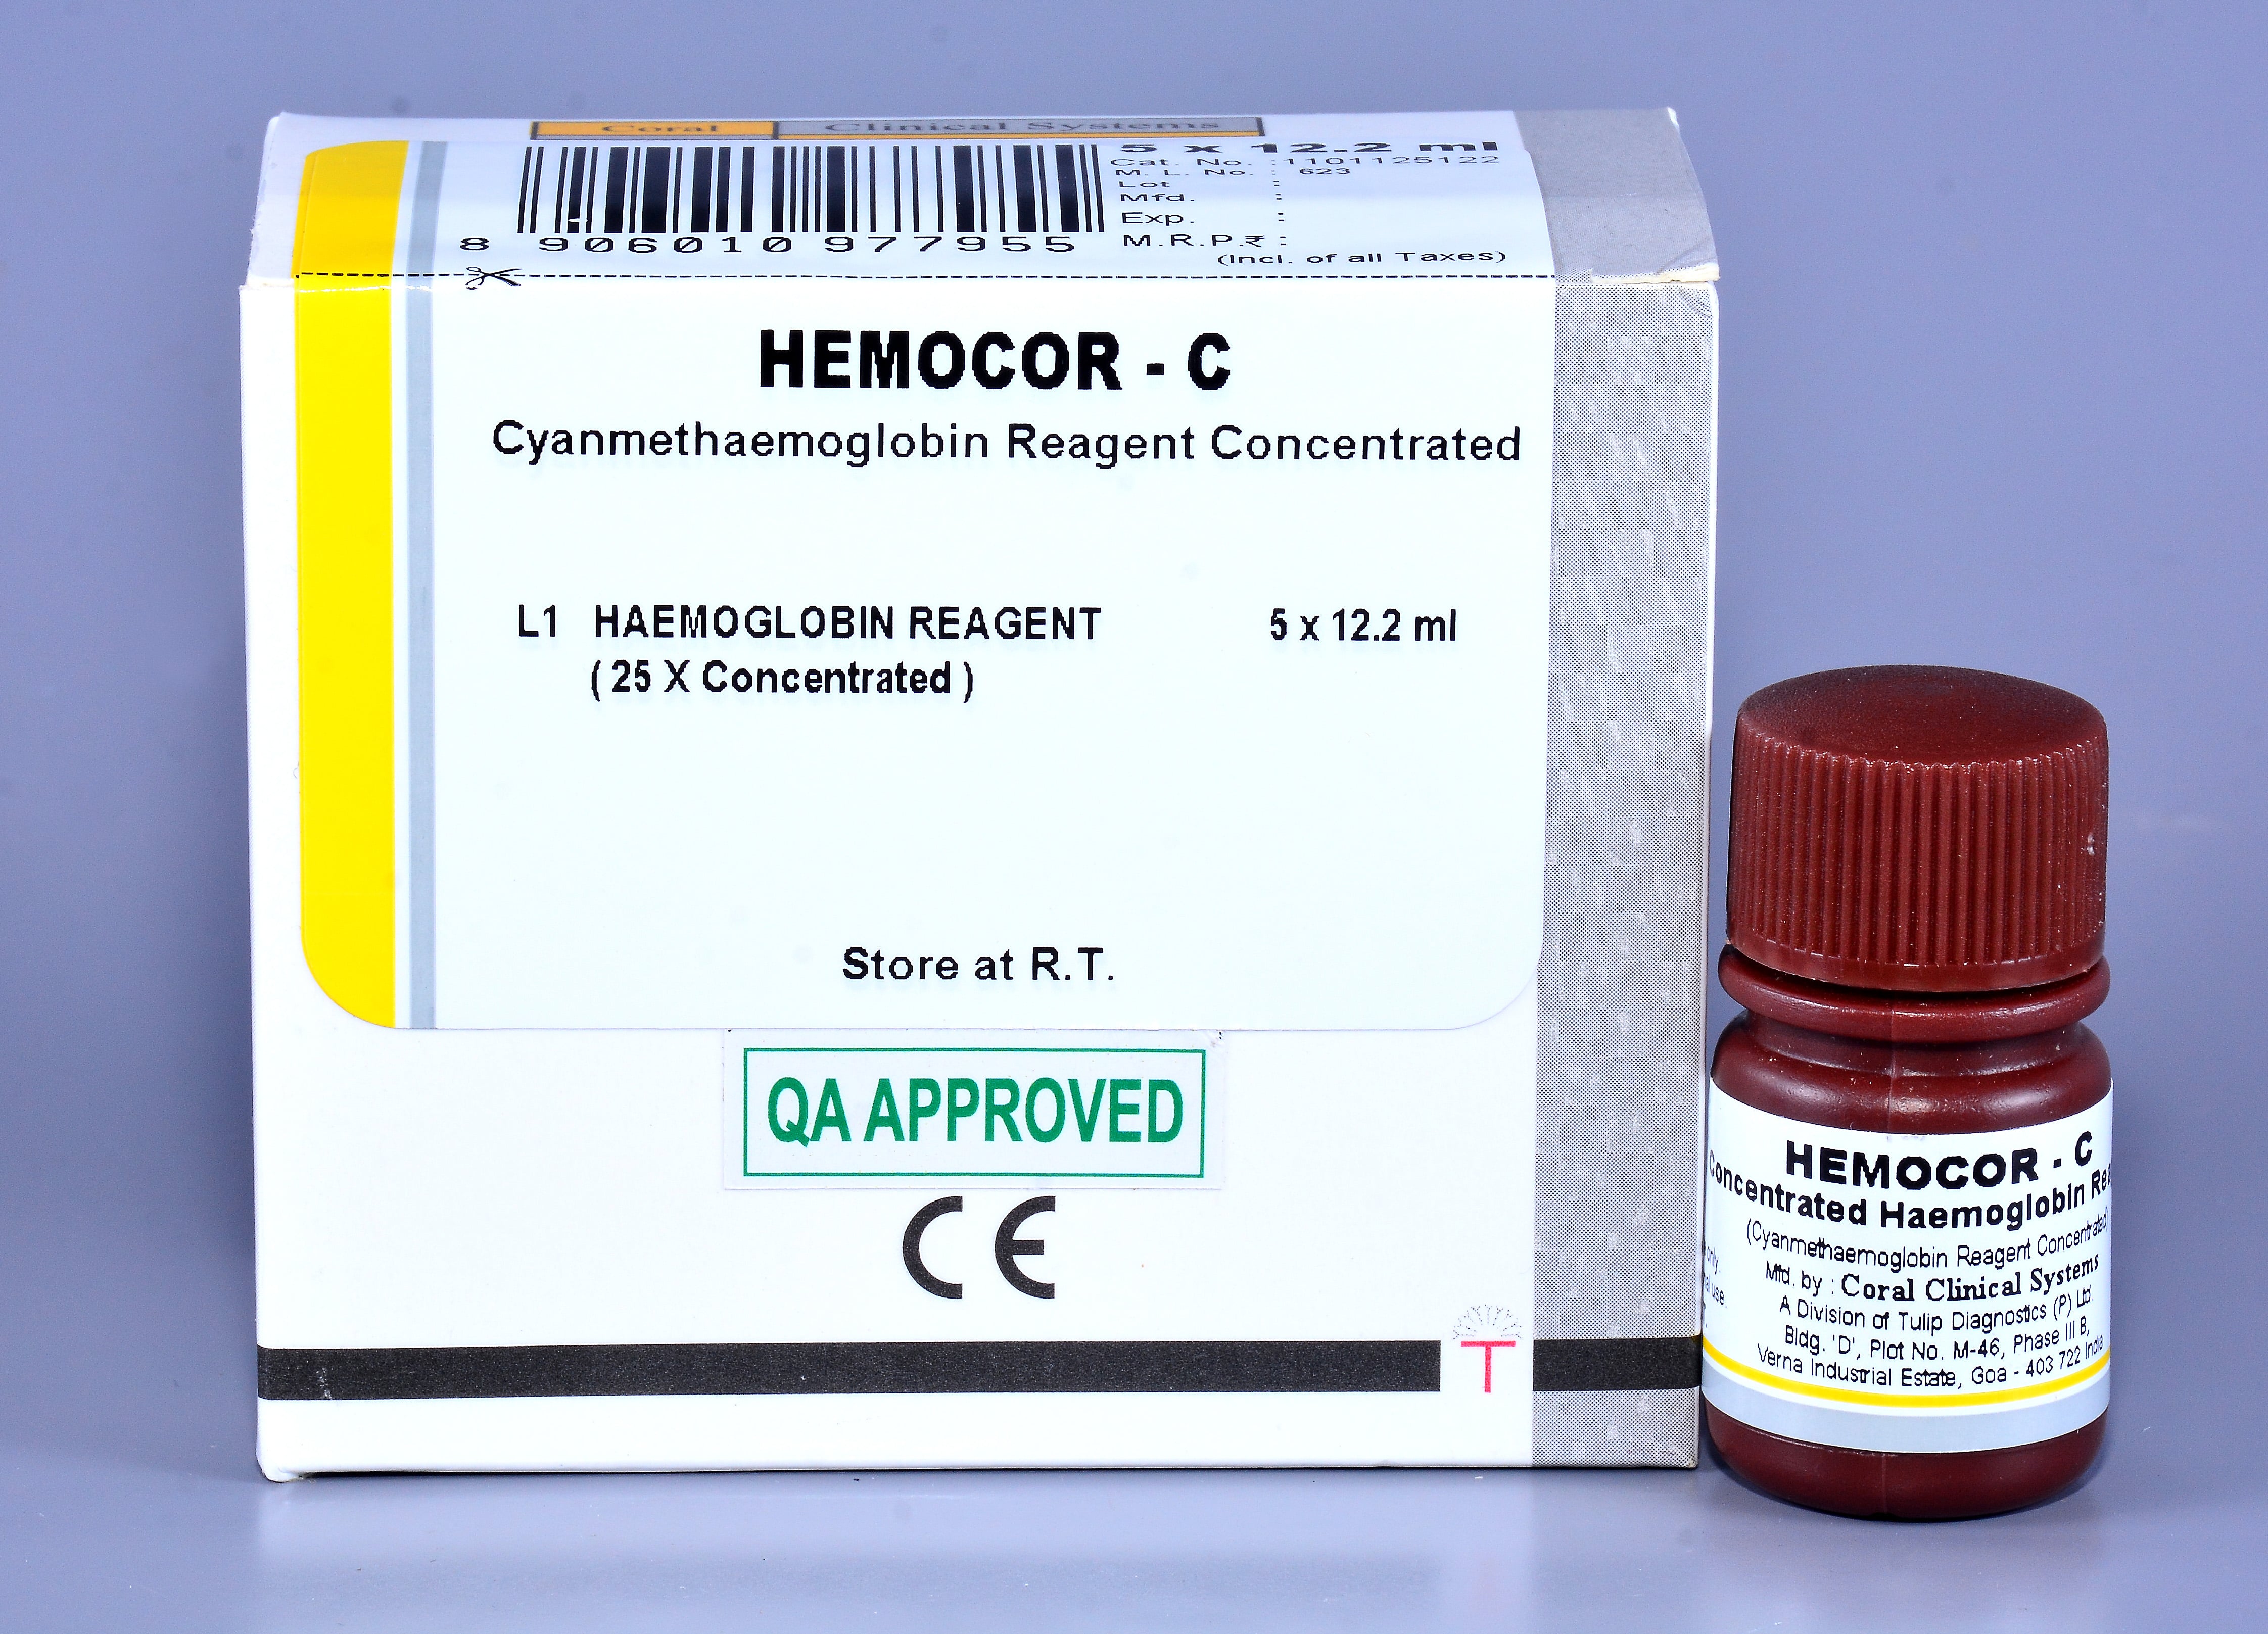 Hemocor - C